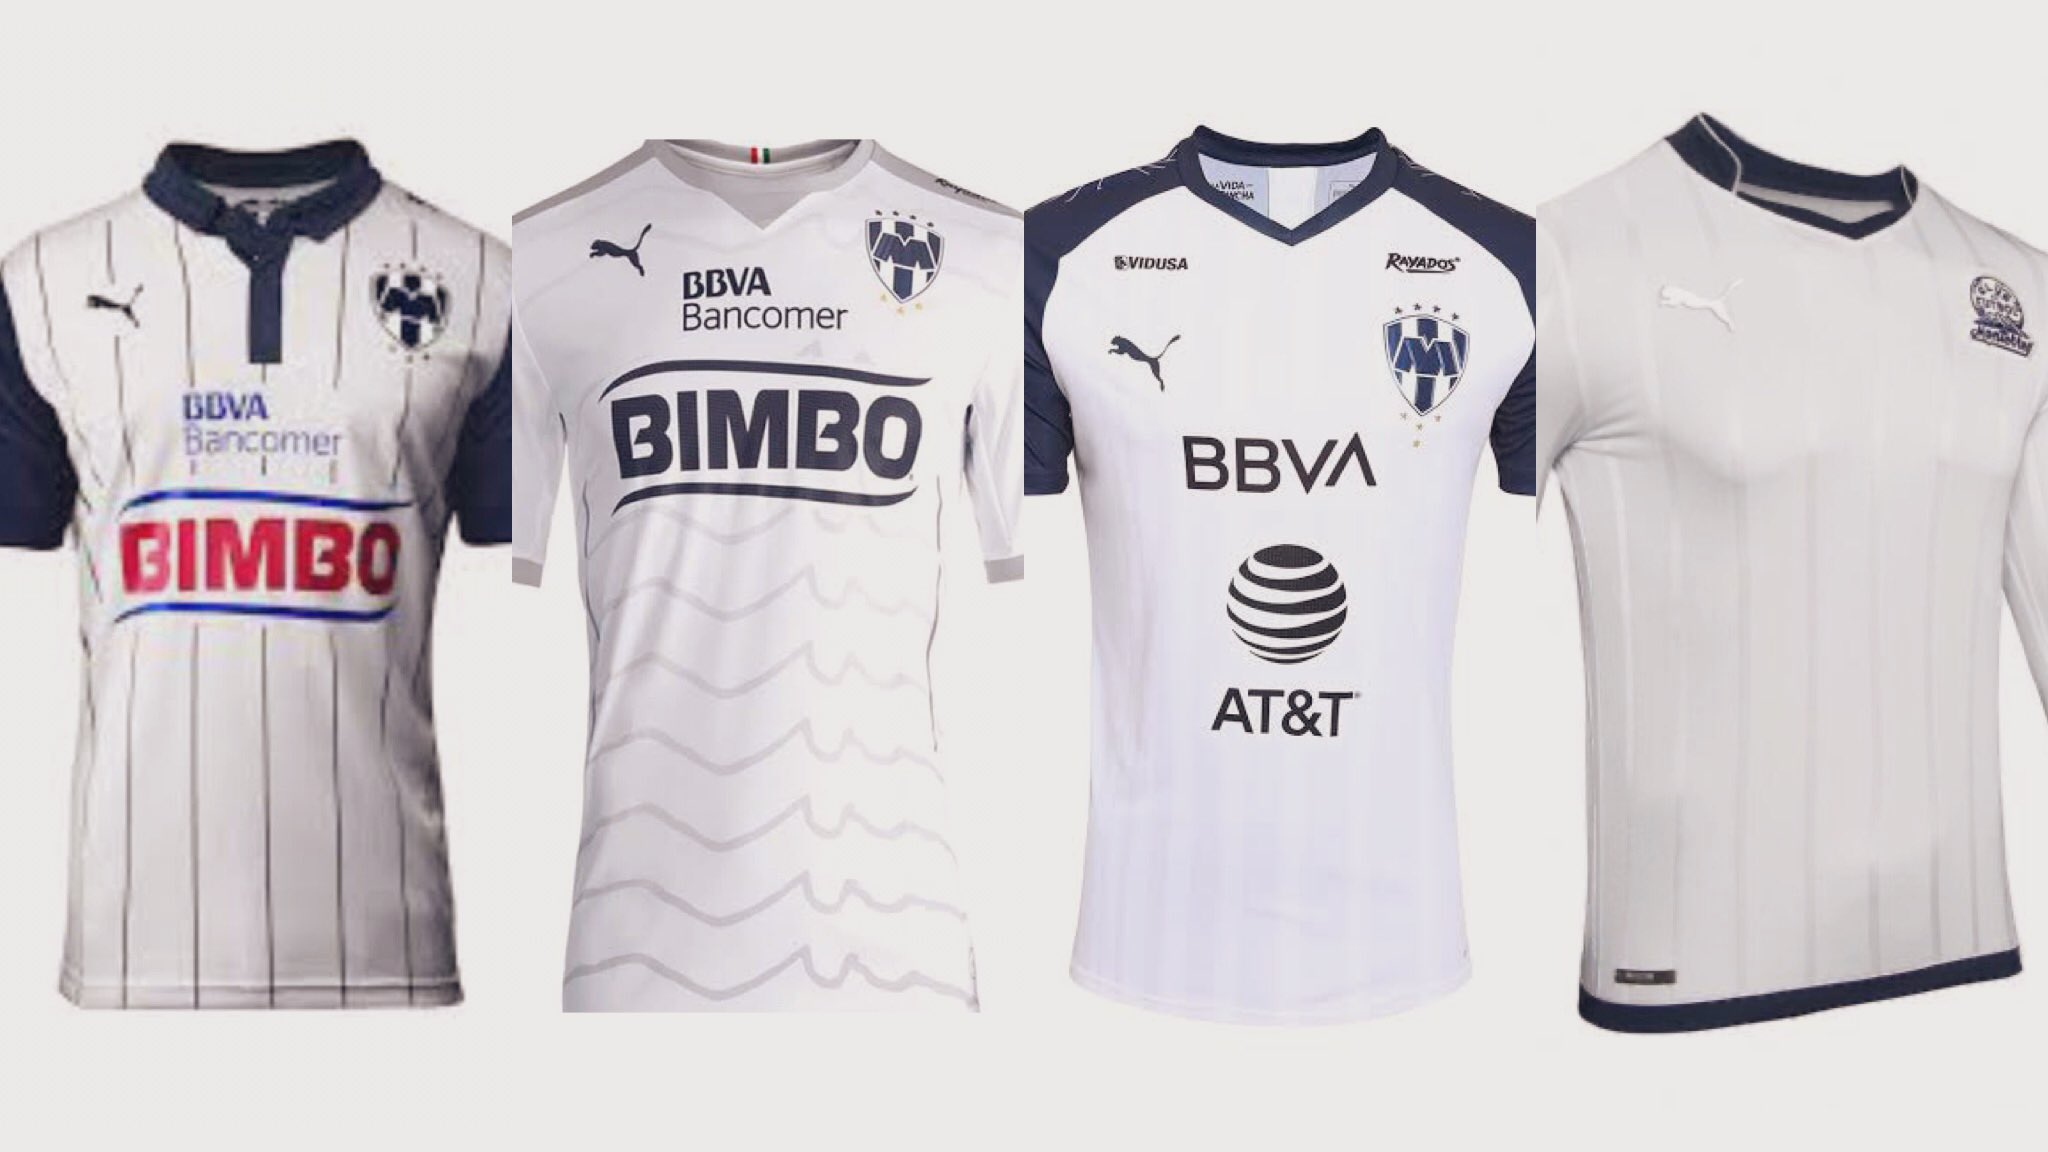 riqueza Flecha sarcoma 12puntoUNO on Twitter: "La evolución del jersey blanco en Rayados  confeccionado por @PUMAmexico #75AñosRayados https://t.co/o4nABnTtqX" /  Twitter